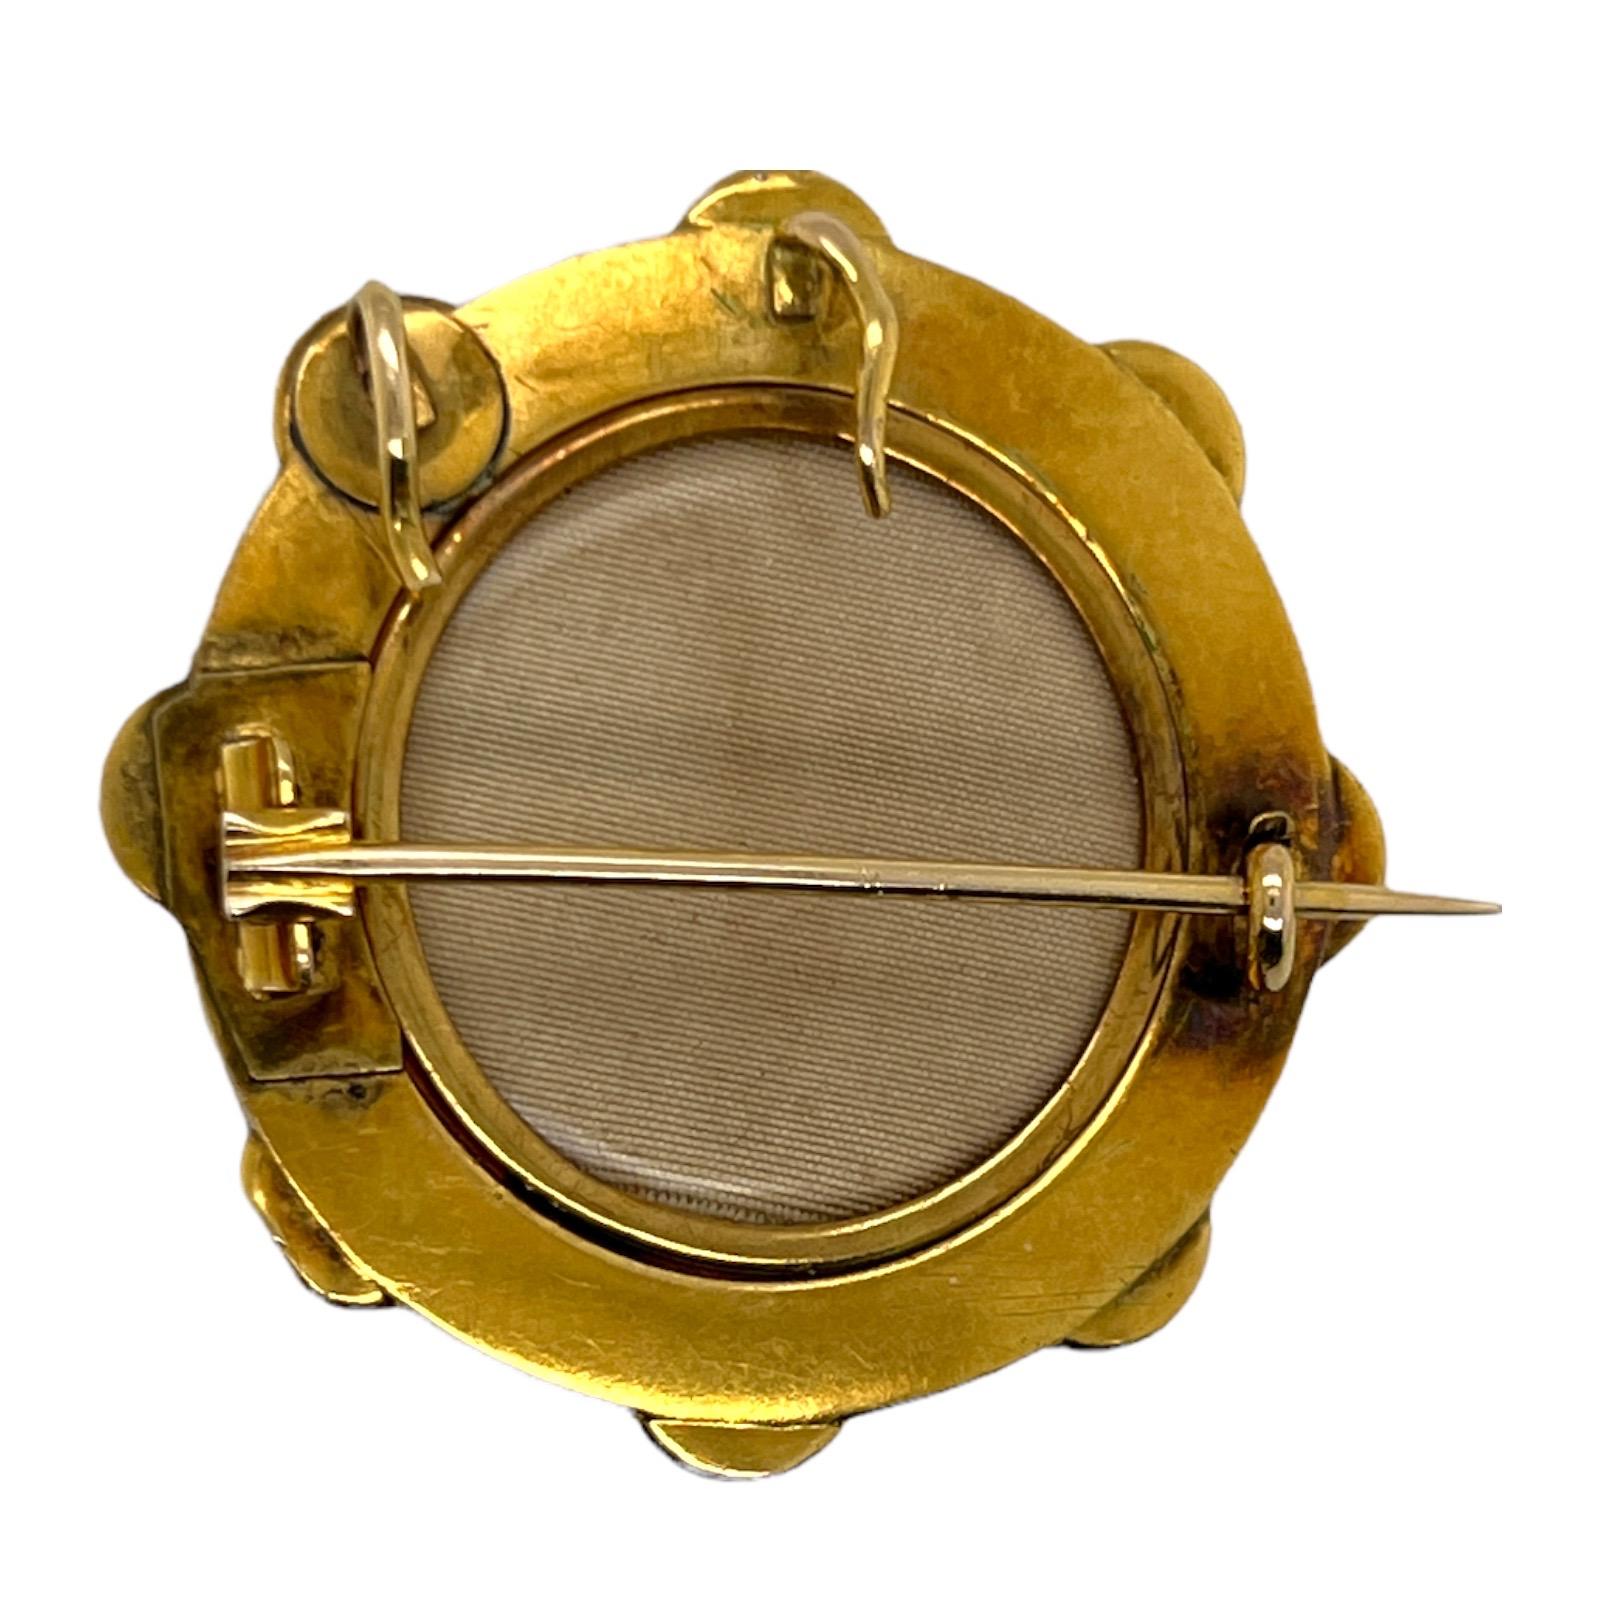 Broche et pendentif victoriens originaux fabriqués à la main en or jaune 18 carats. La broche est ornée de pierres précieuses bleu turquoise et d'un motif étrusque. La broche mesure 40 x 40 mm, et peut également être portée comme un pendentif. 